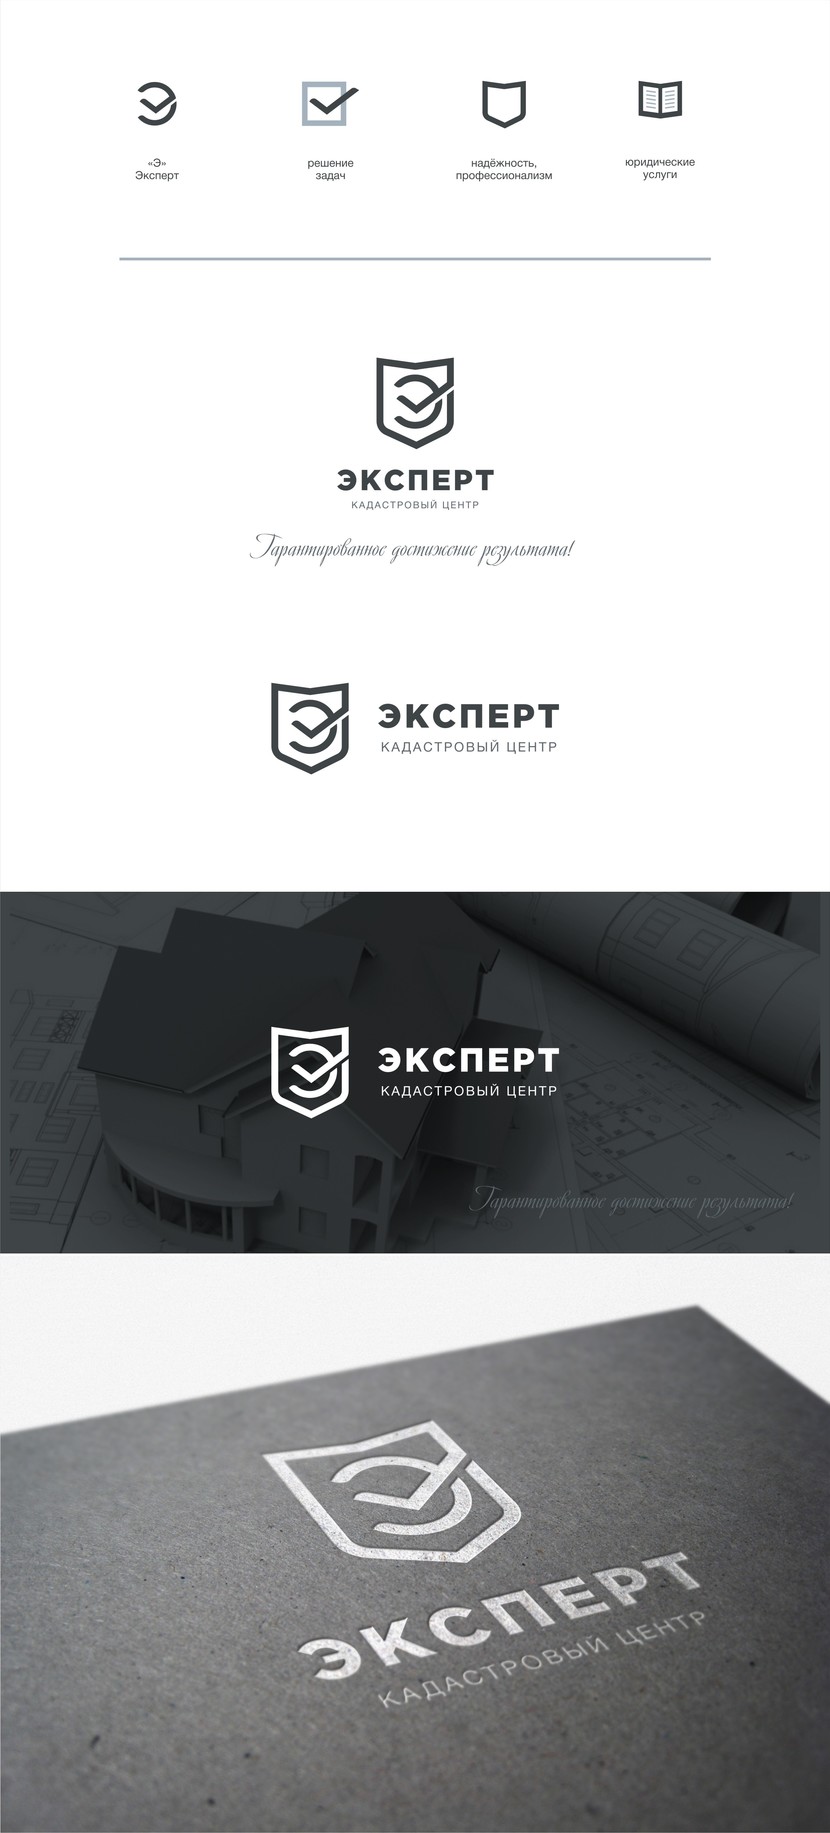 Разработка логотипа и фирменного стиля для землеустроительной компании  -  автор Марина Потаничева